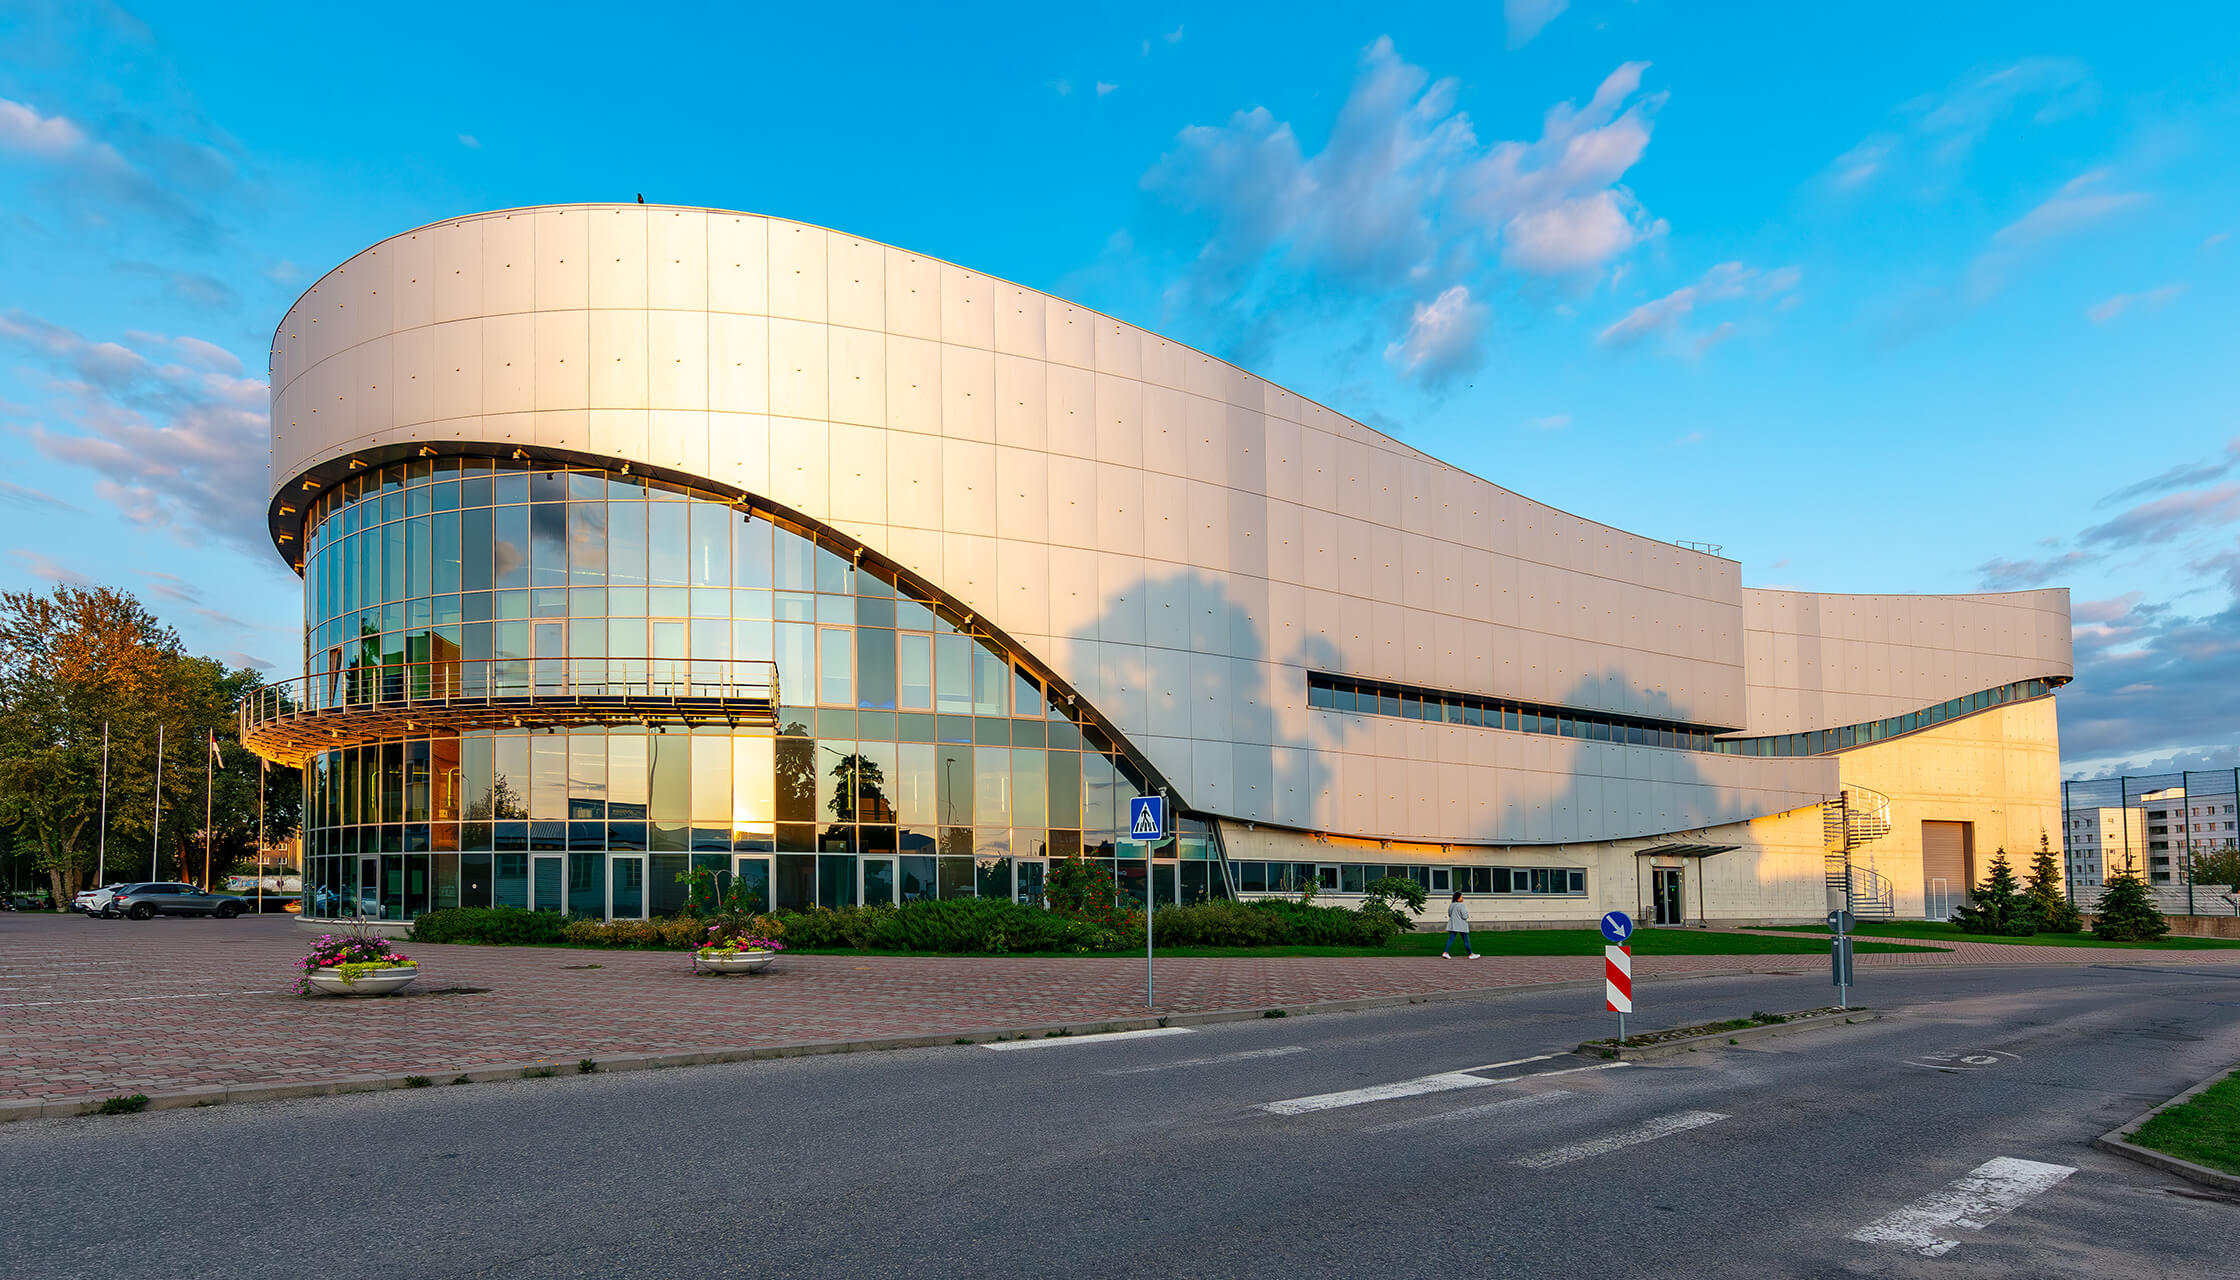 Daugavpils Olimpiskais centrs – nozīmīga reģiona sporta un kultūras aktivitāšu norises vieta